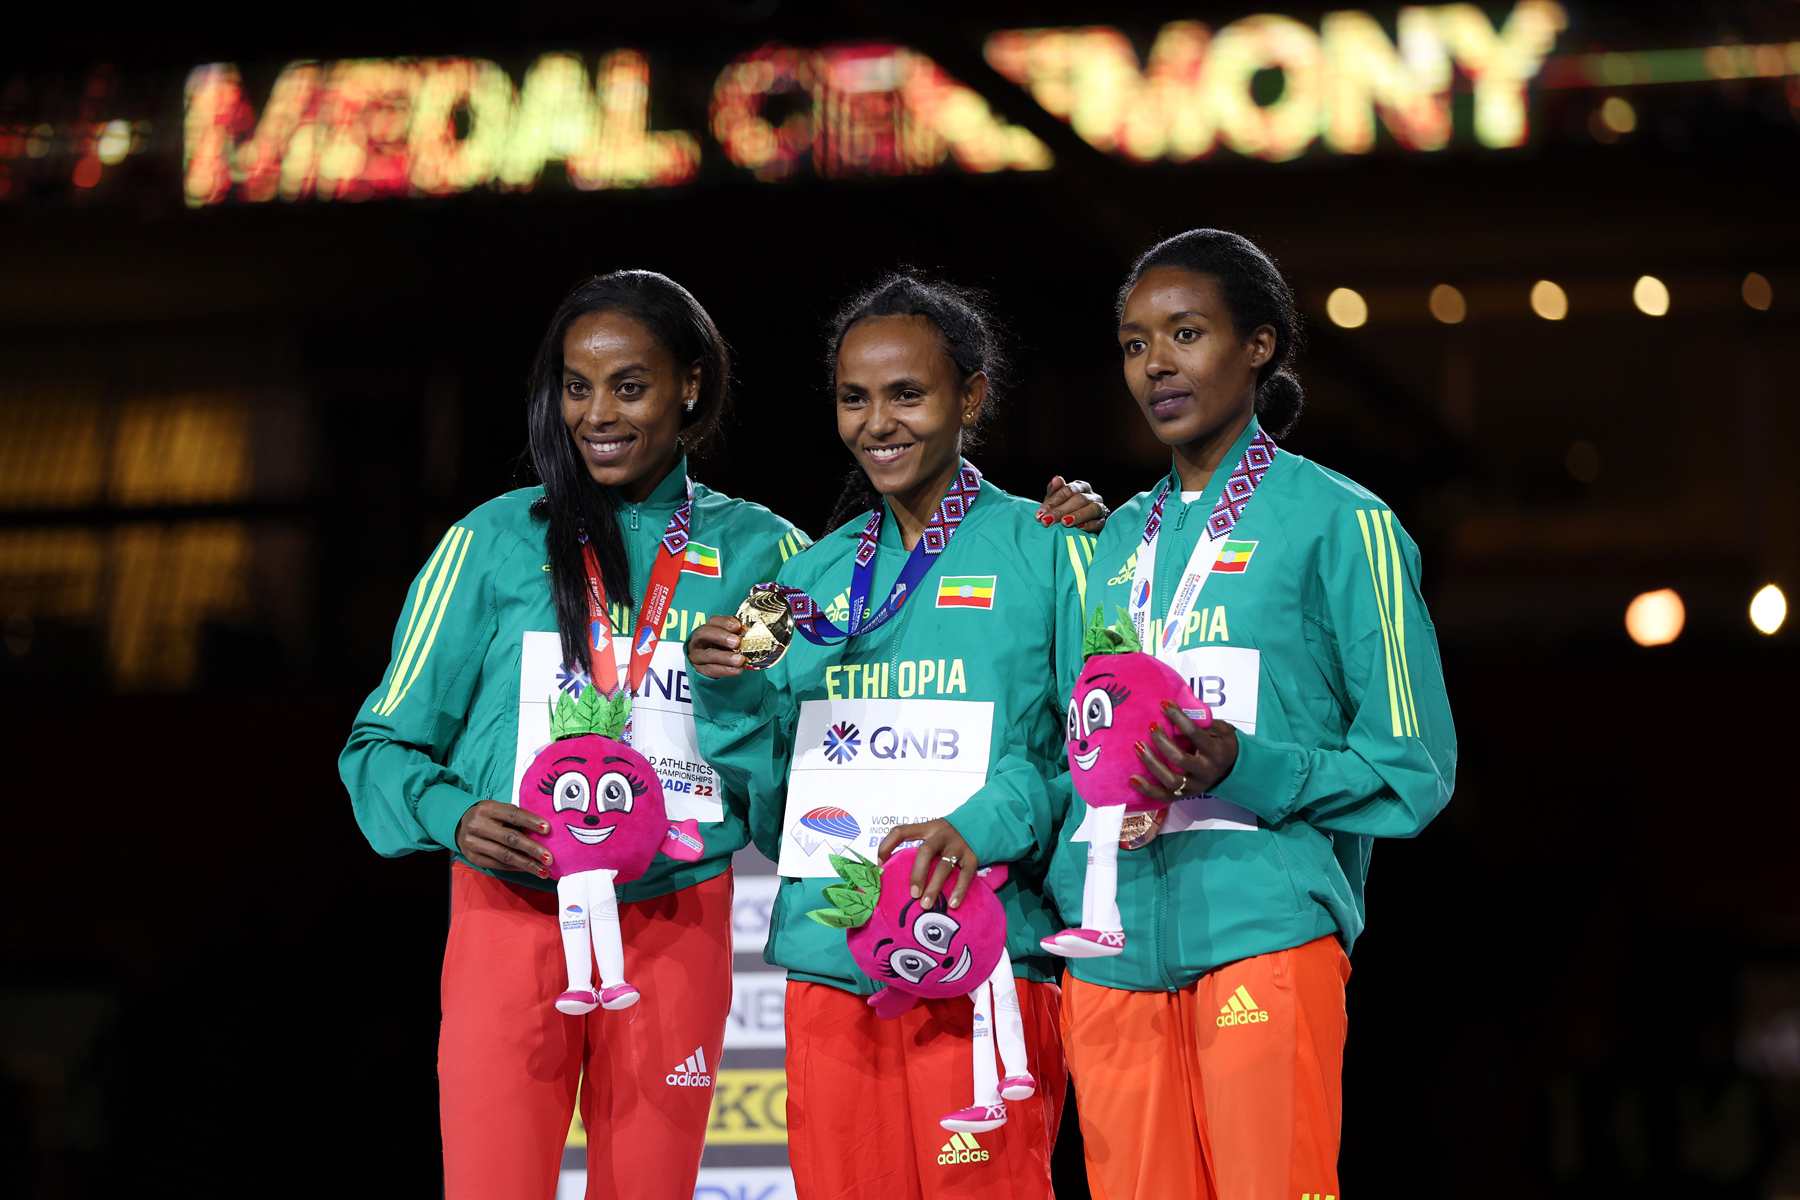 Ethiopians Guday Tsegay, Axumawit Embaye and Hirut Meshesha on the podium / Credit: Getty Images for World Athletics